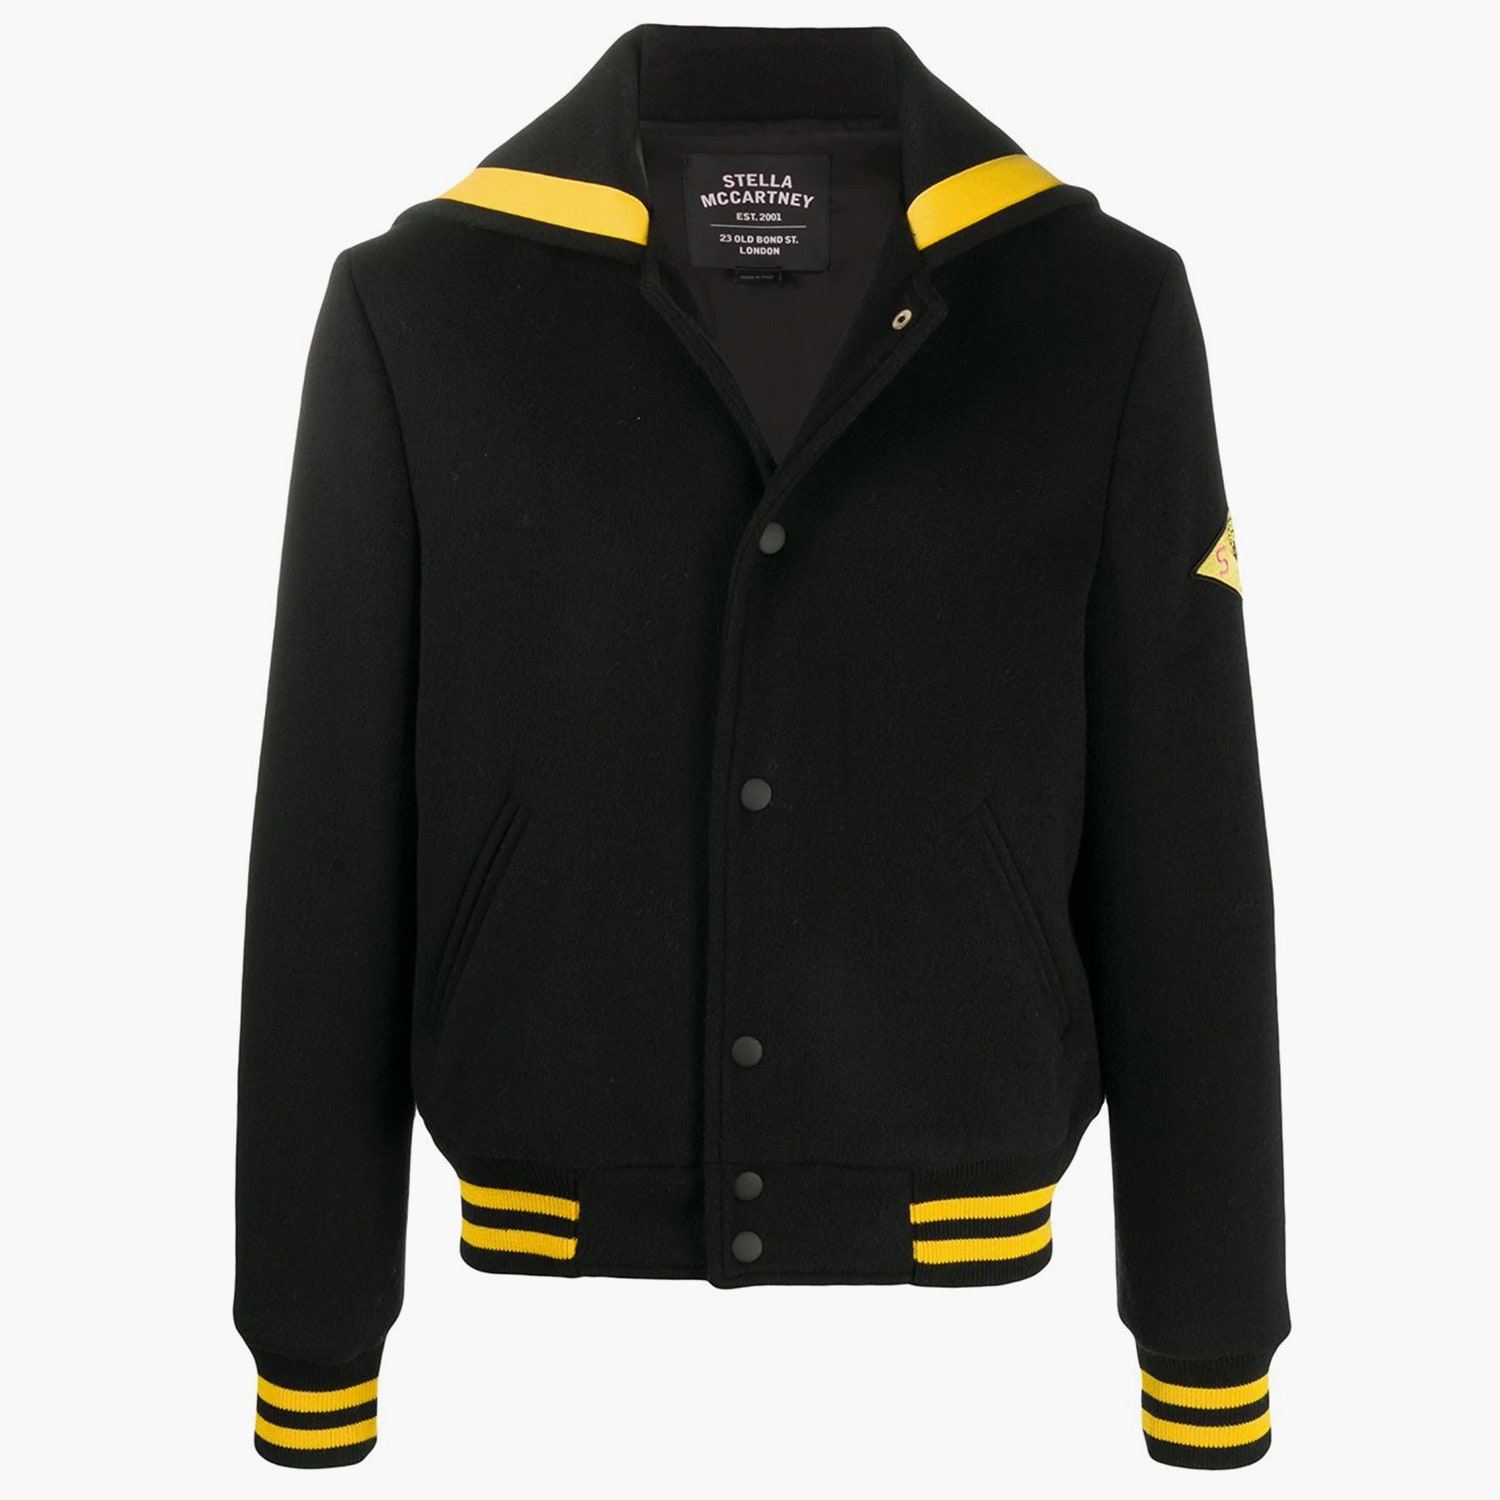 Куртка с нашивкой и графичным принтом на спине Stella McCartney 129400 рублей farfetch.com